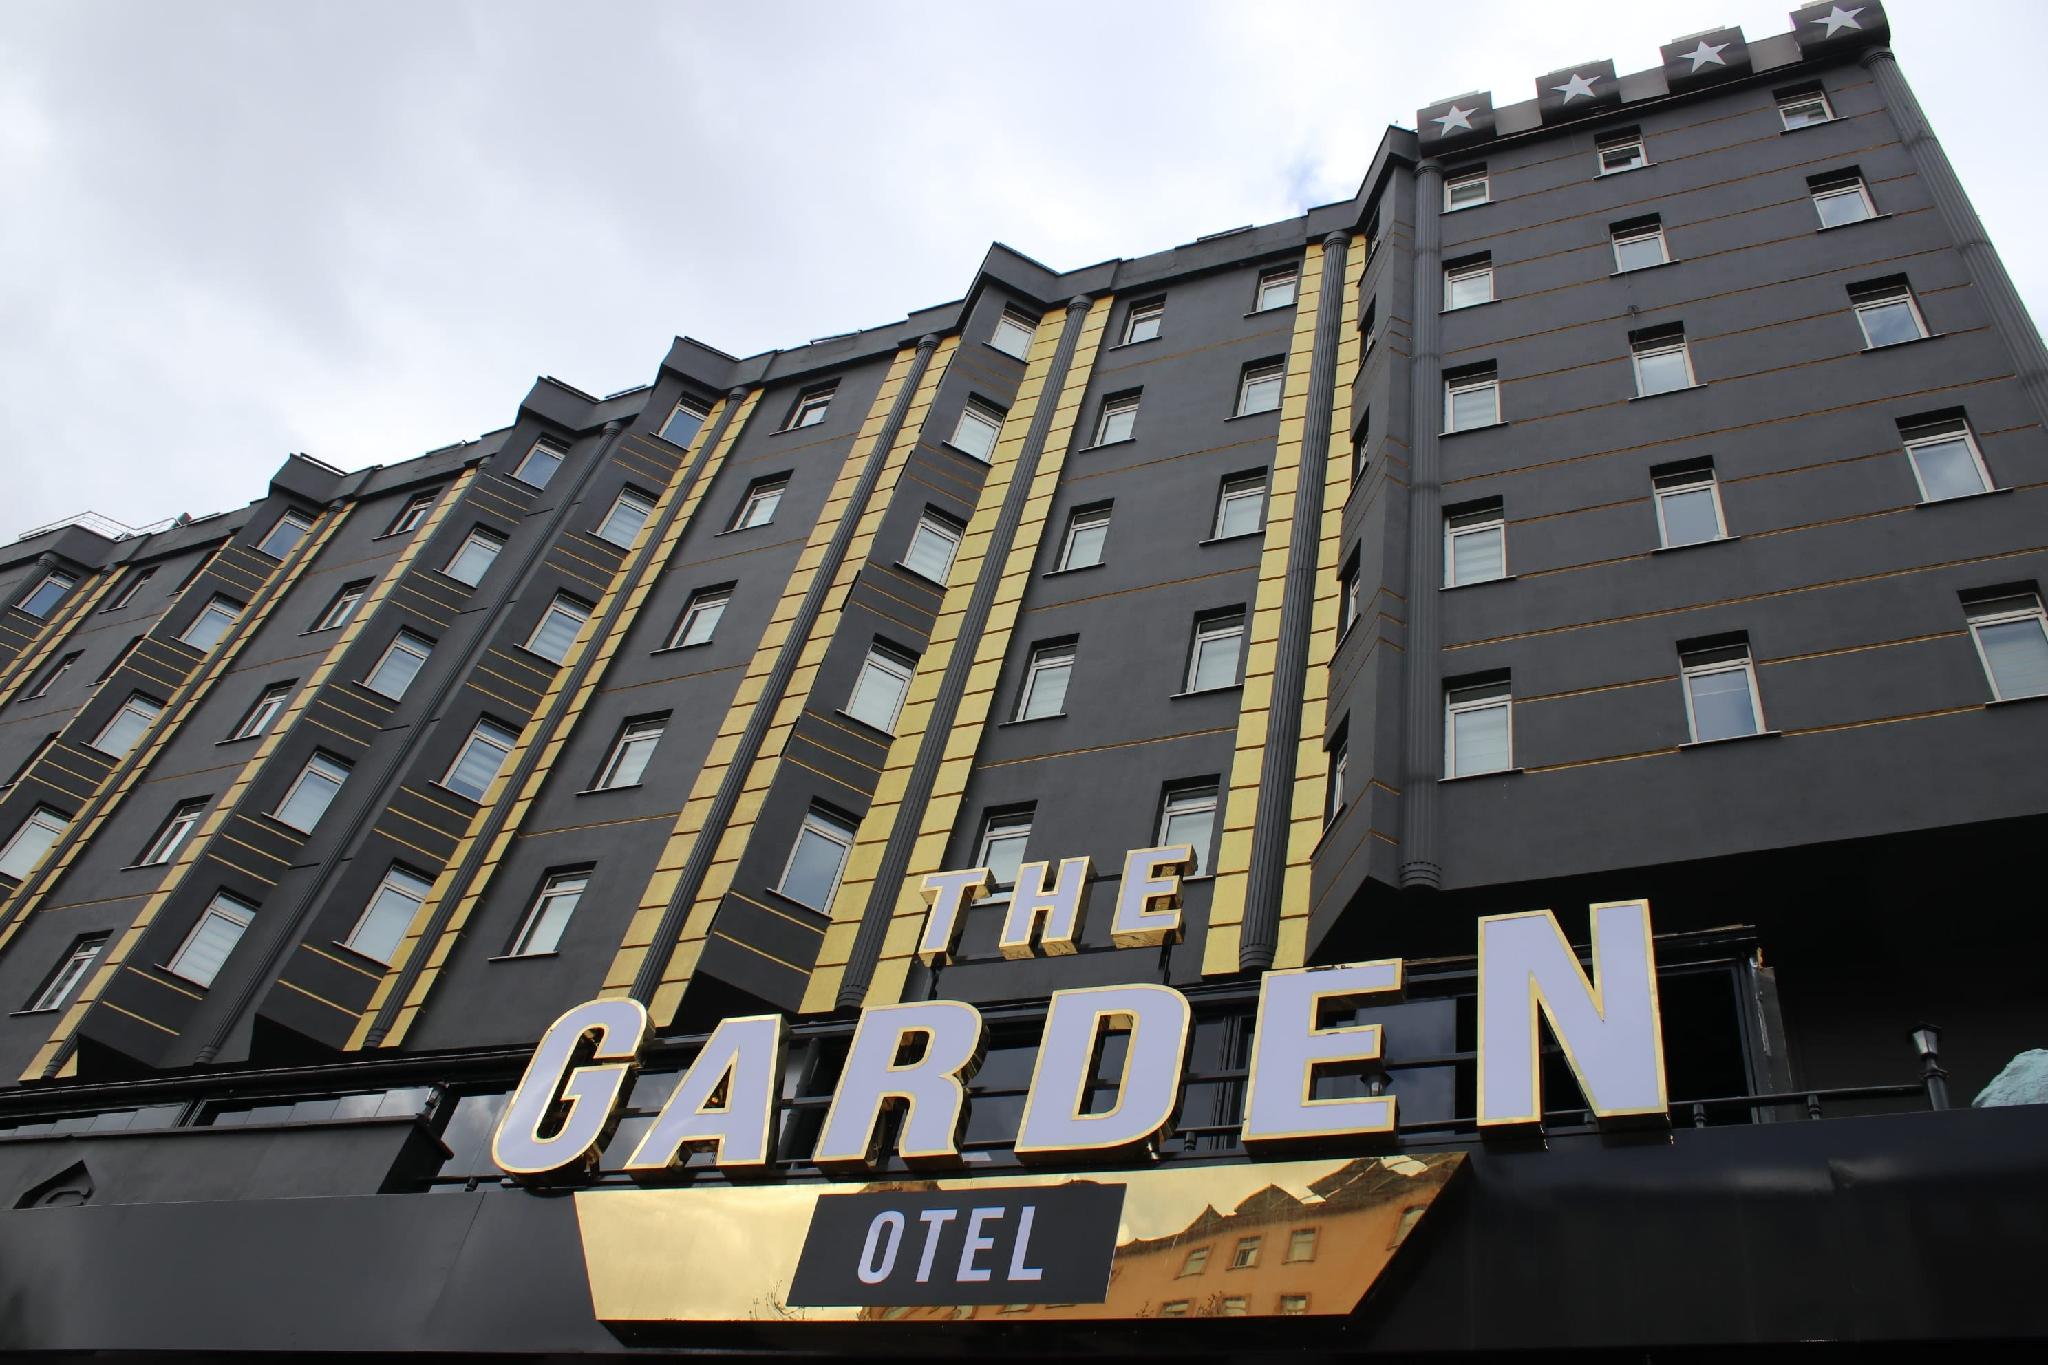 Demirel Garden Hotel (The Garden Otel)